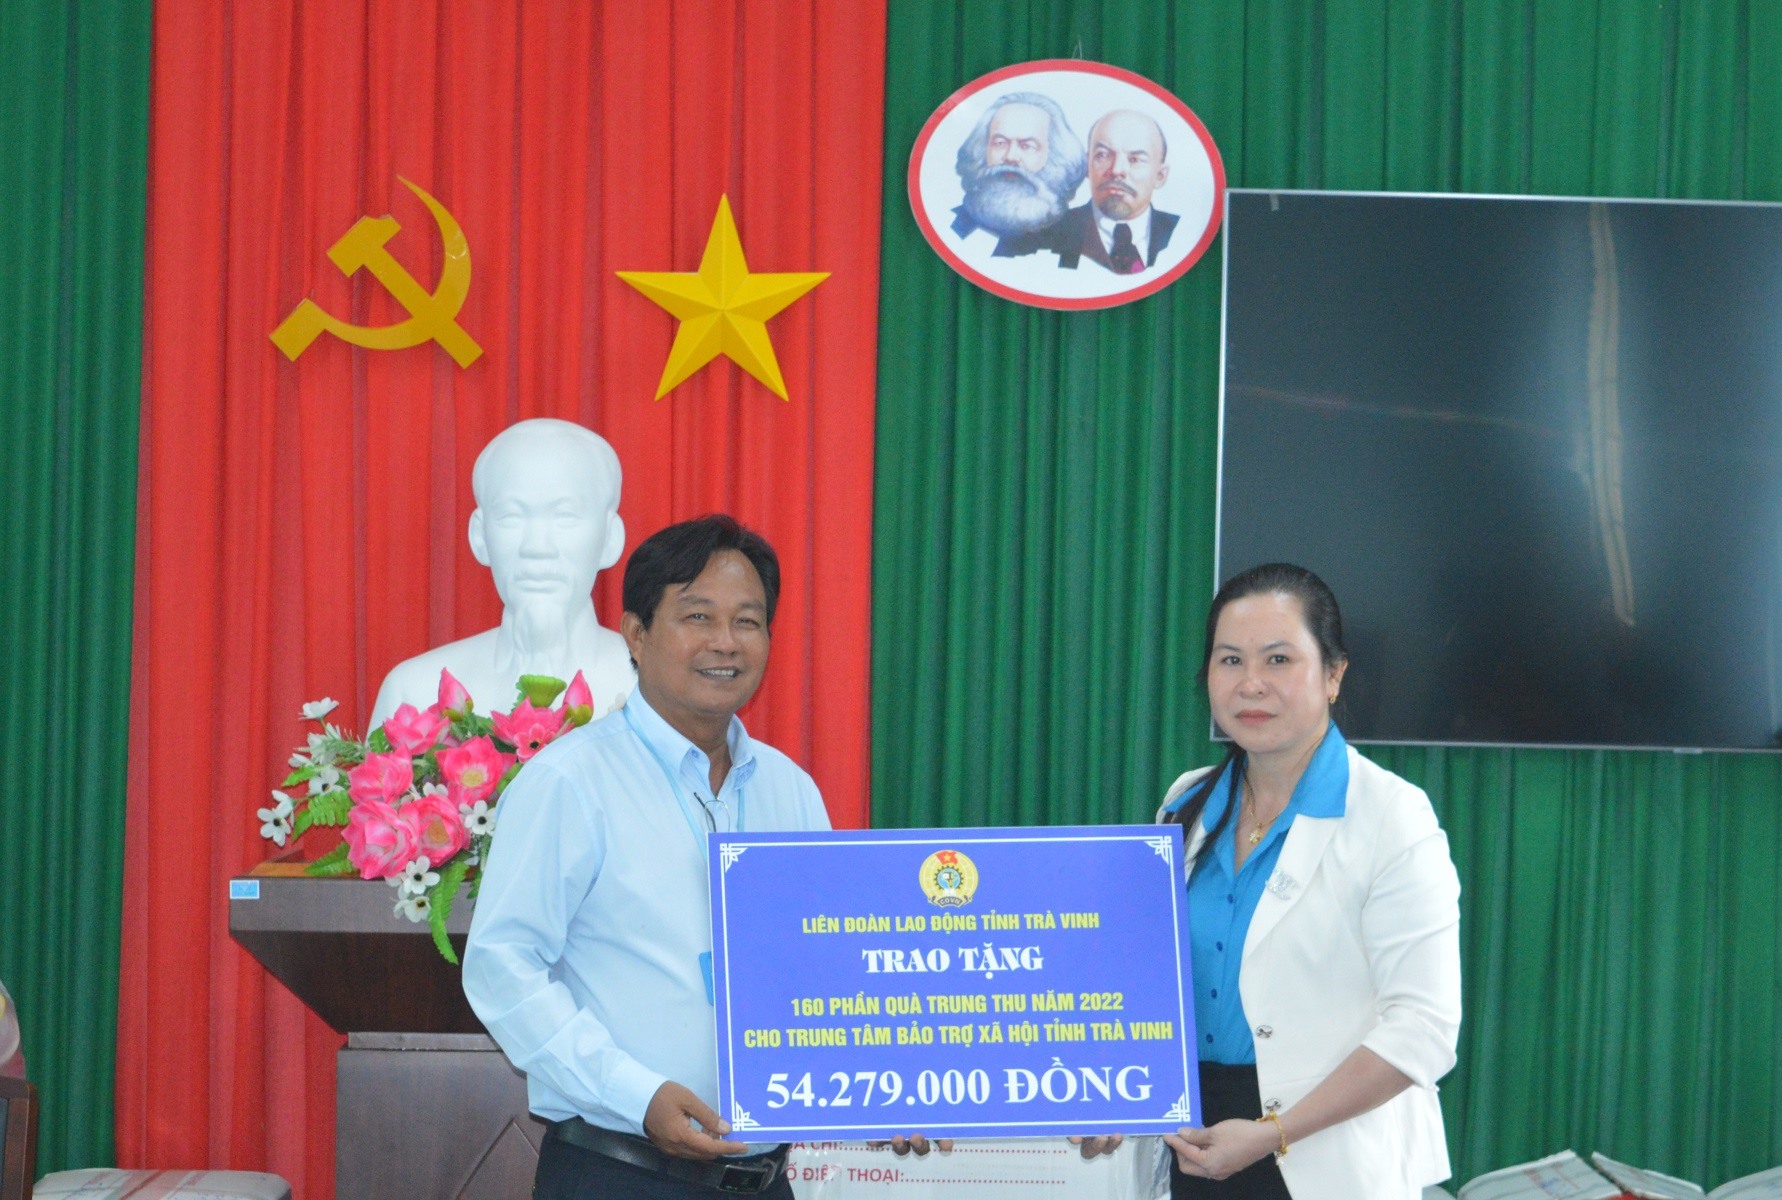 Chủ tịch LĐLĐ tỉnh Trà Vinh Thạch Thị Thu Hà trao bảng tượng trưng cho Giám đốc Trung tâm Bảo trợ xã hội tỉnh Trà Vinh. Ảnh: Trí Dũng